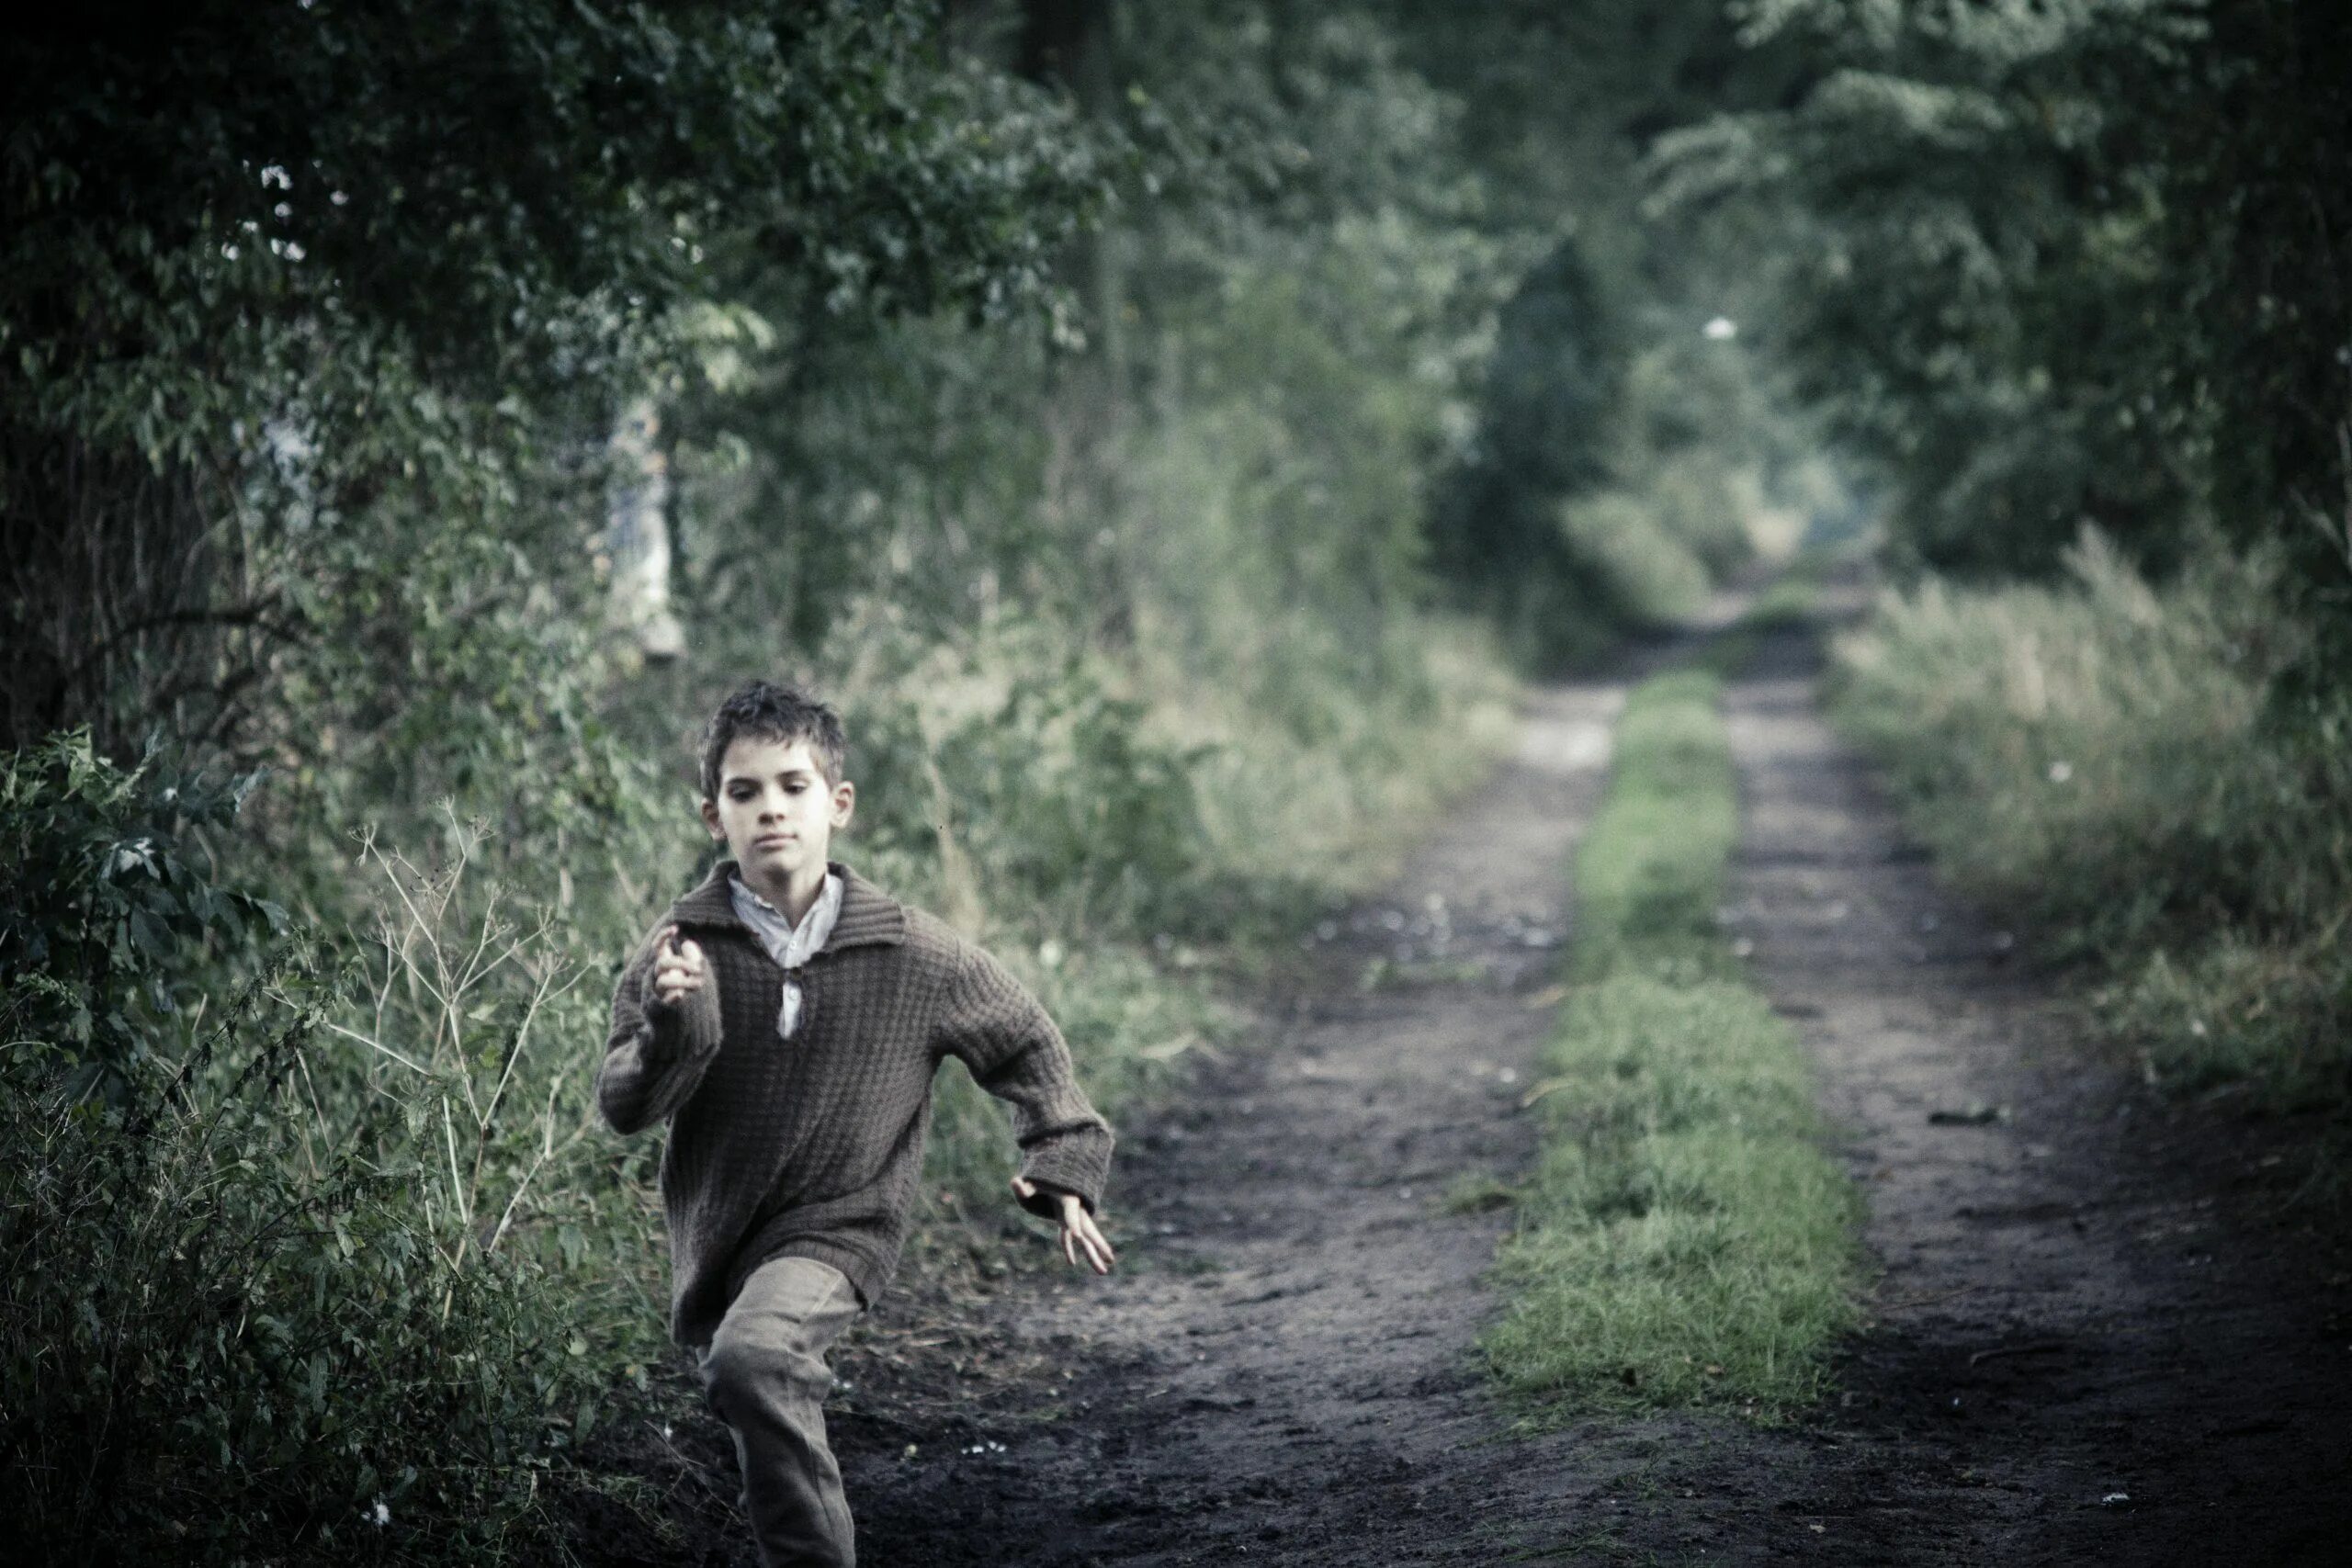 Беги, мальчик, беги / Lauf Junge Lauf, 2013. Мальчик бежит. Человек убегает.